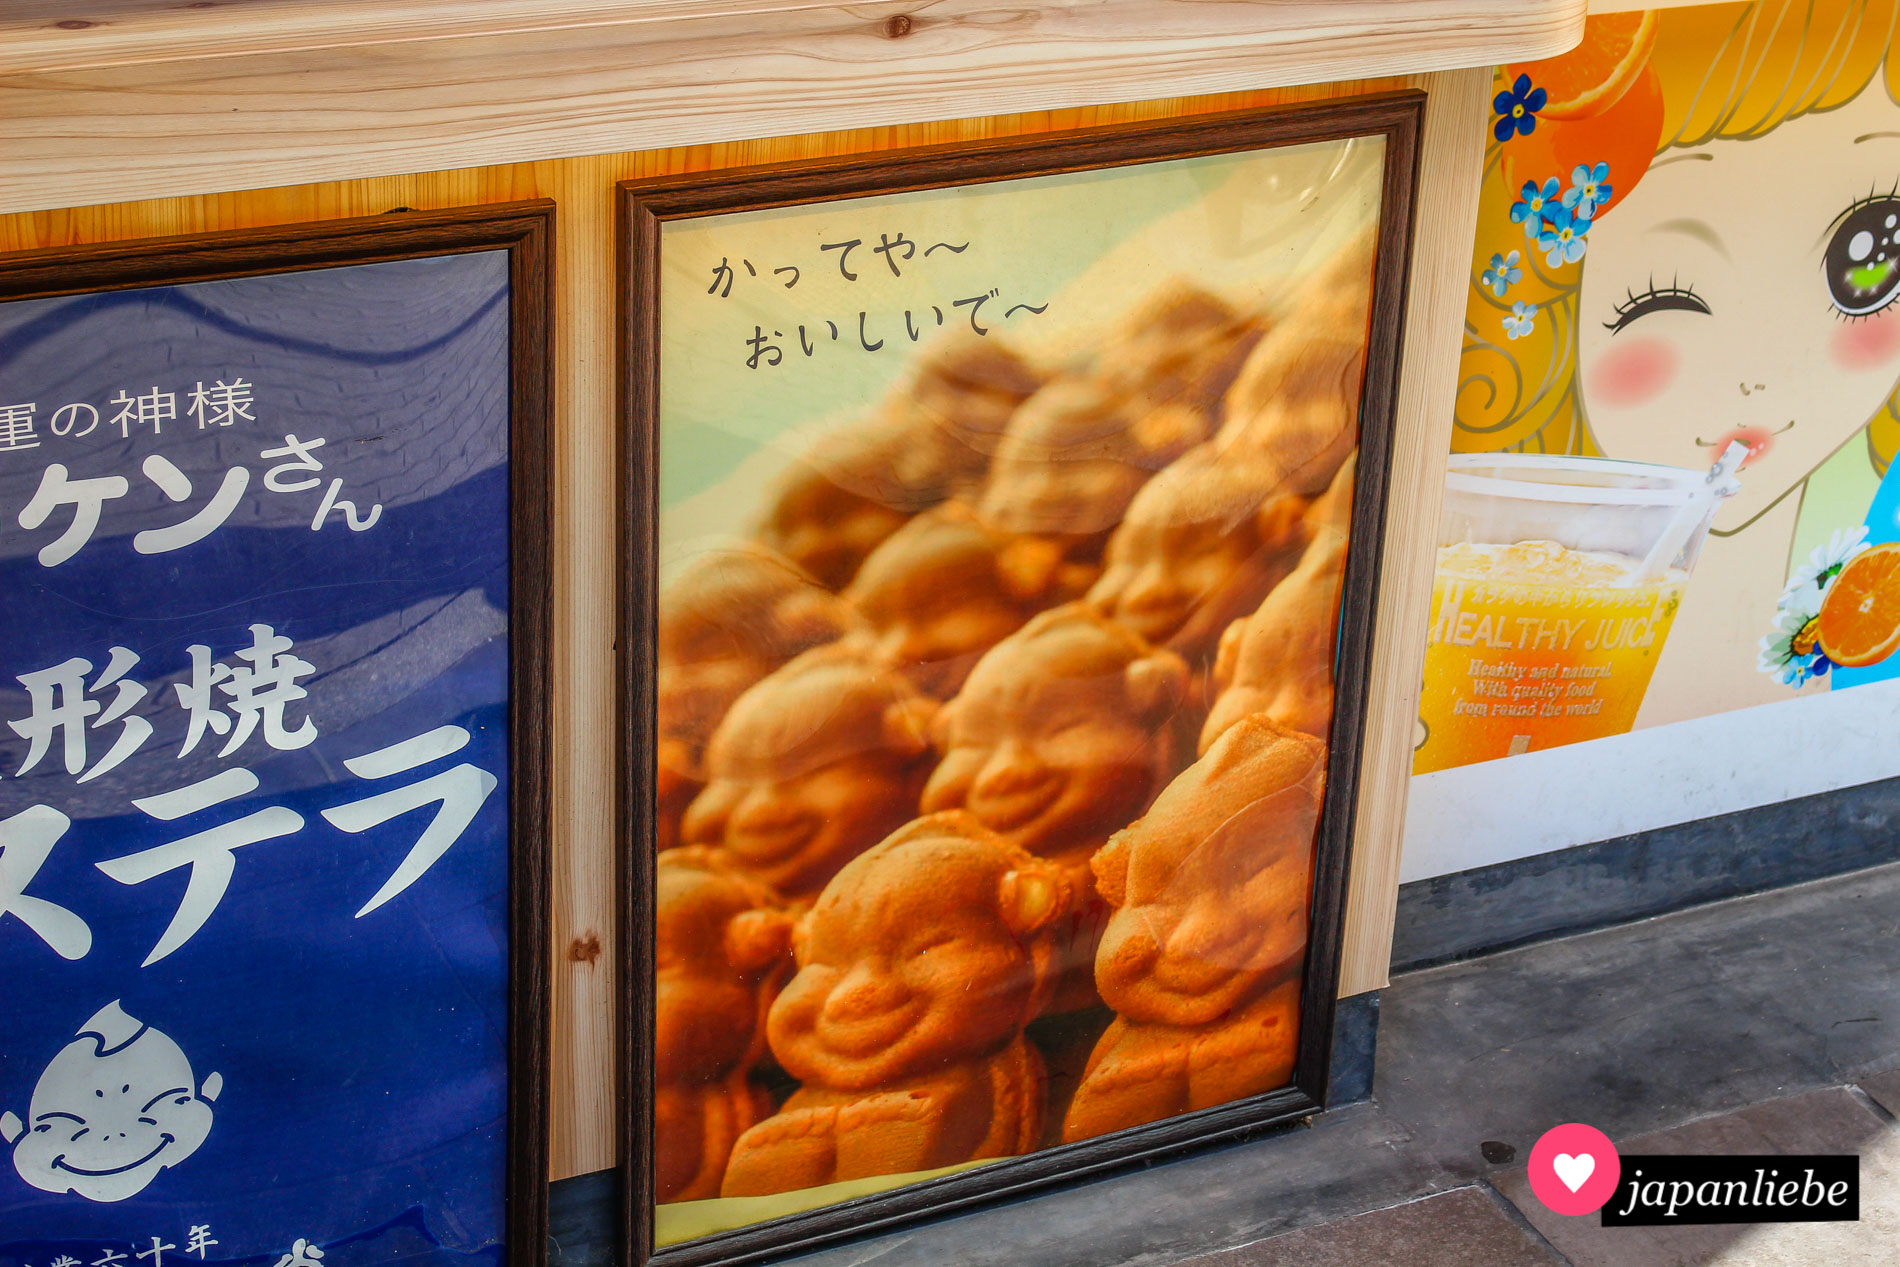 Ein Plakat in Shinsekai bewirbt das örtliche Maskottchen Billiken als essbare Variante.